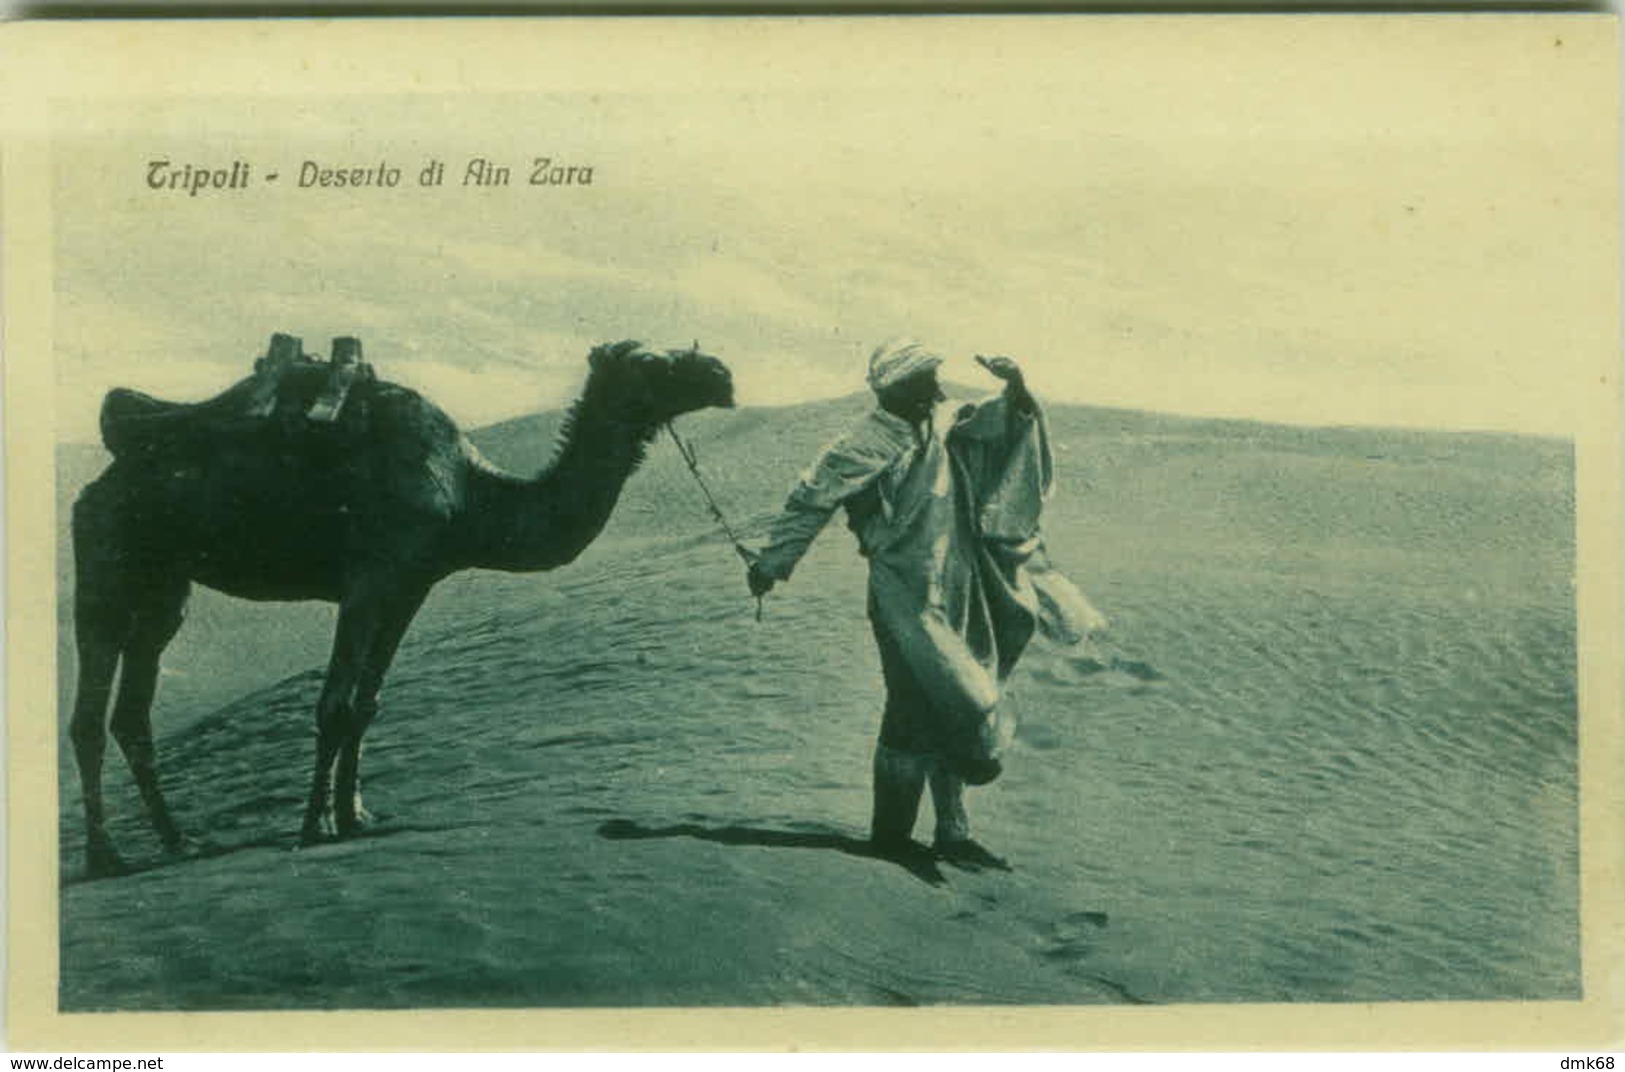 AFRICA - LYBIA / LIBIA - TRIPOLI - DESERTO DI AIN ZARA - EDIZIONE BENEDETTO MEIGHDESC - FOT. BRAGONI - 1920s (BG3909) - Libya